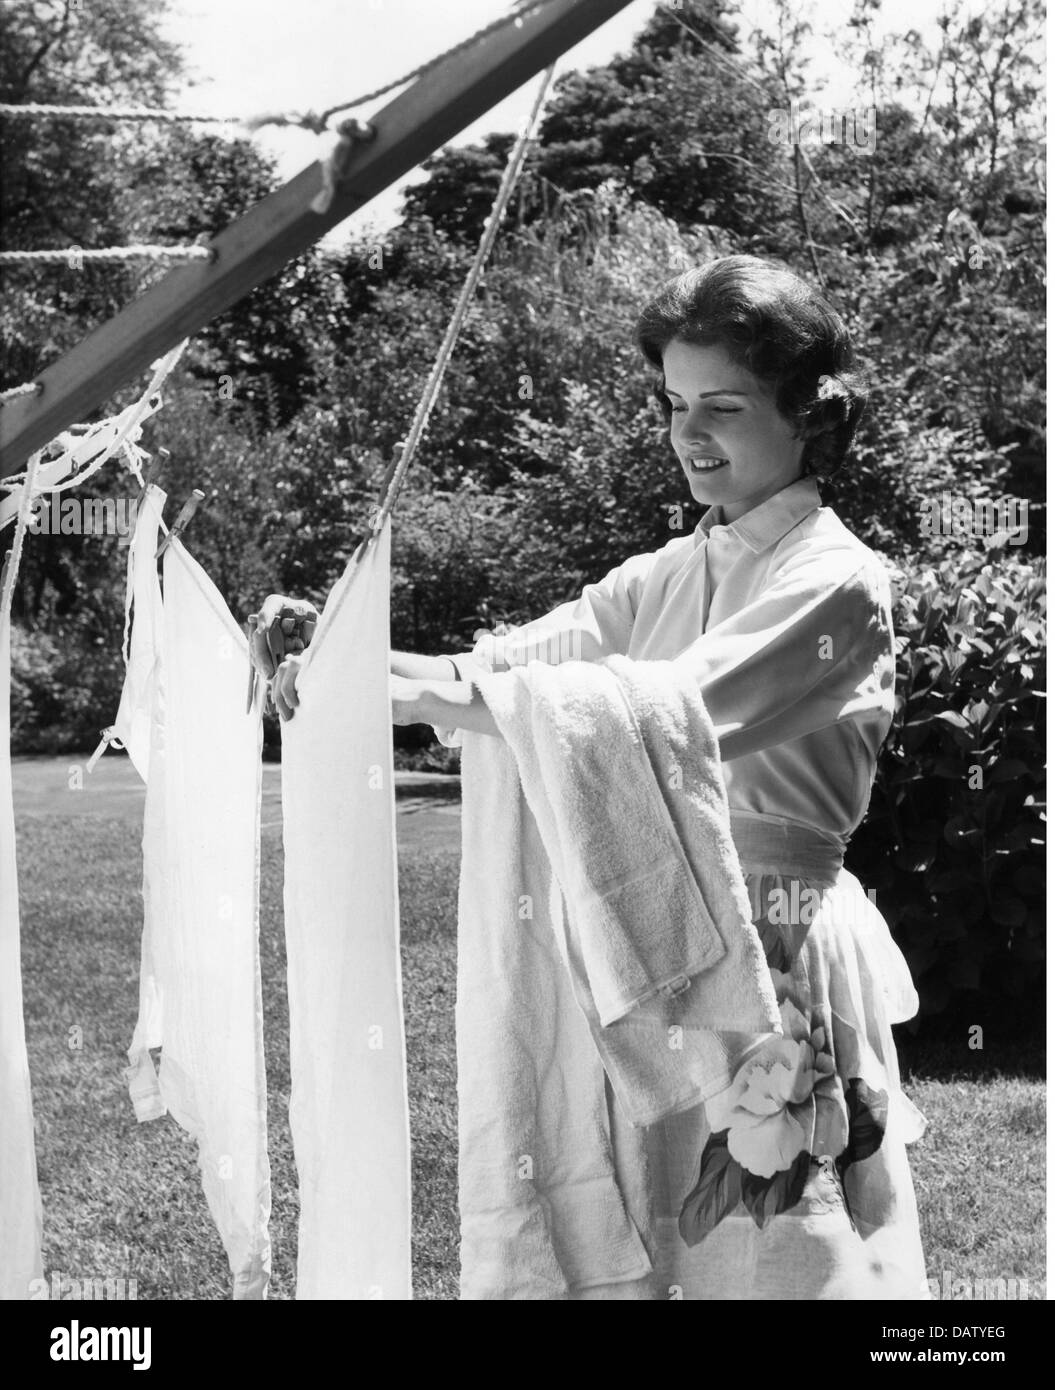 Mujer lavando ropa al aire libre Imágenes de stock en blanco y